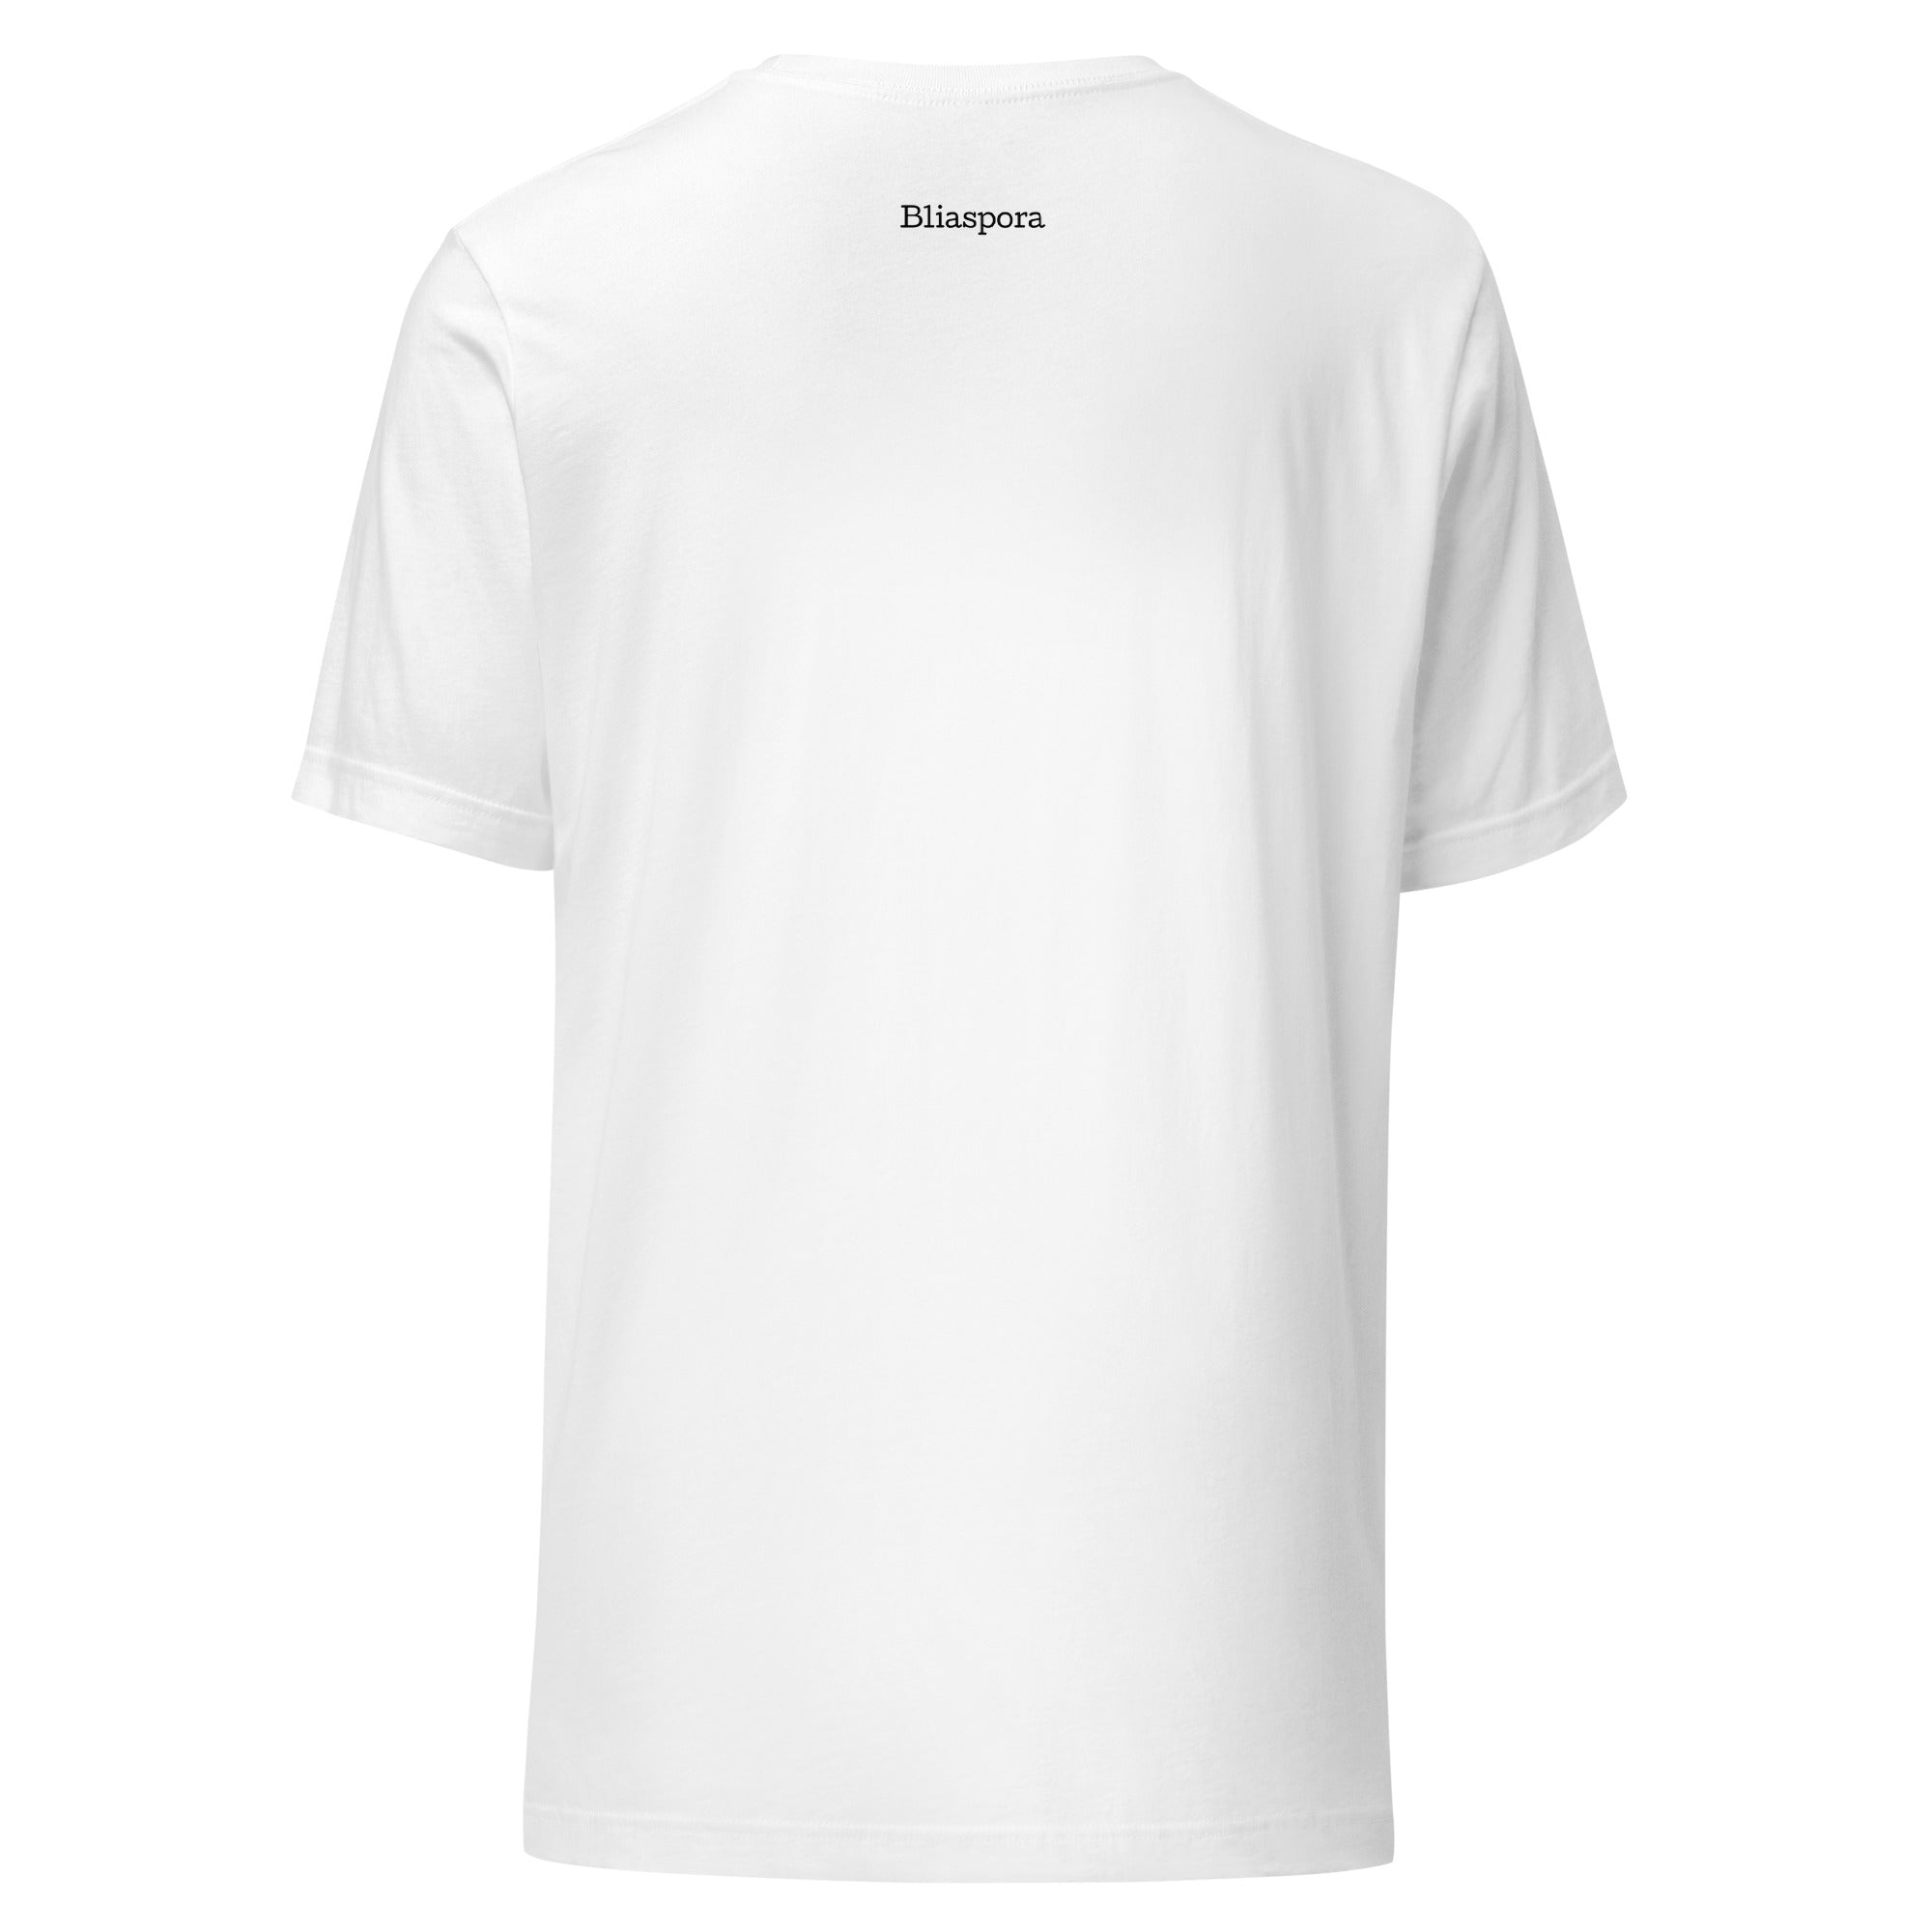 Juneteenth unisex t-shirt